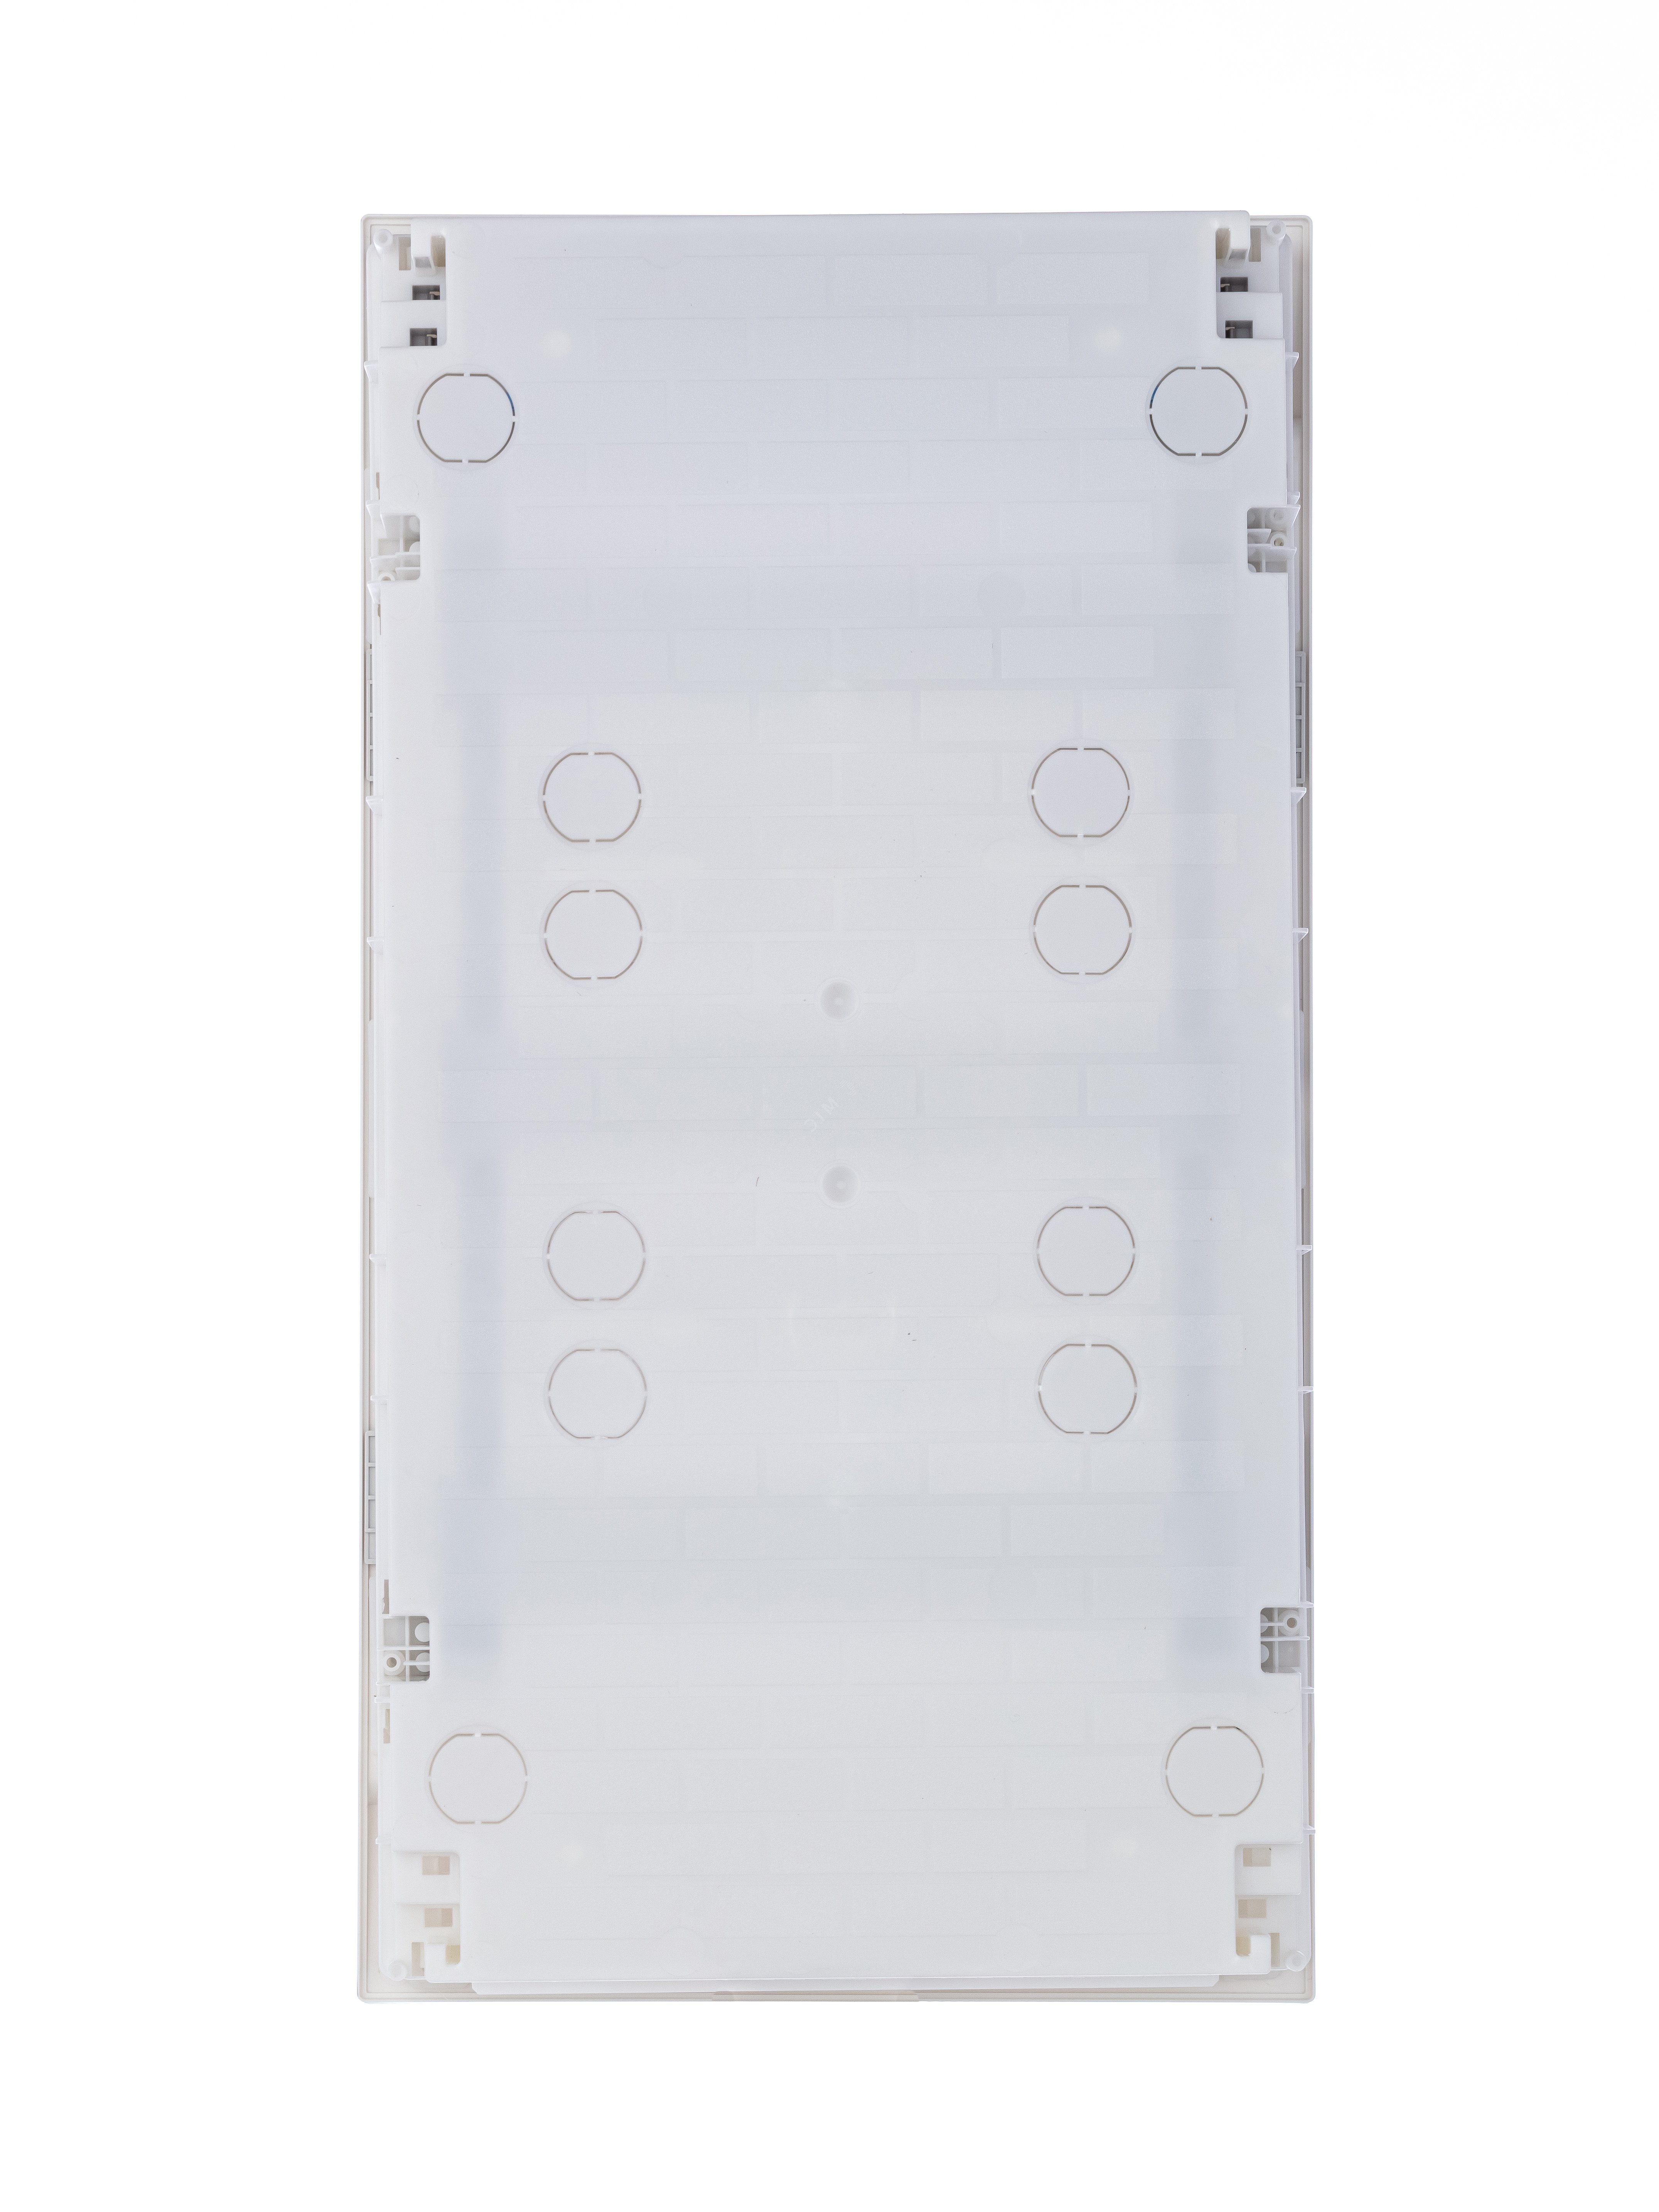 Щит распределительный встраиваемый ЩРв-п-36 пластиковый Mistral41 серая прозрачная дверь с клеммами IP41 (41A12X33B) 1SLM004101A2207 ABB - превью 5